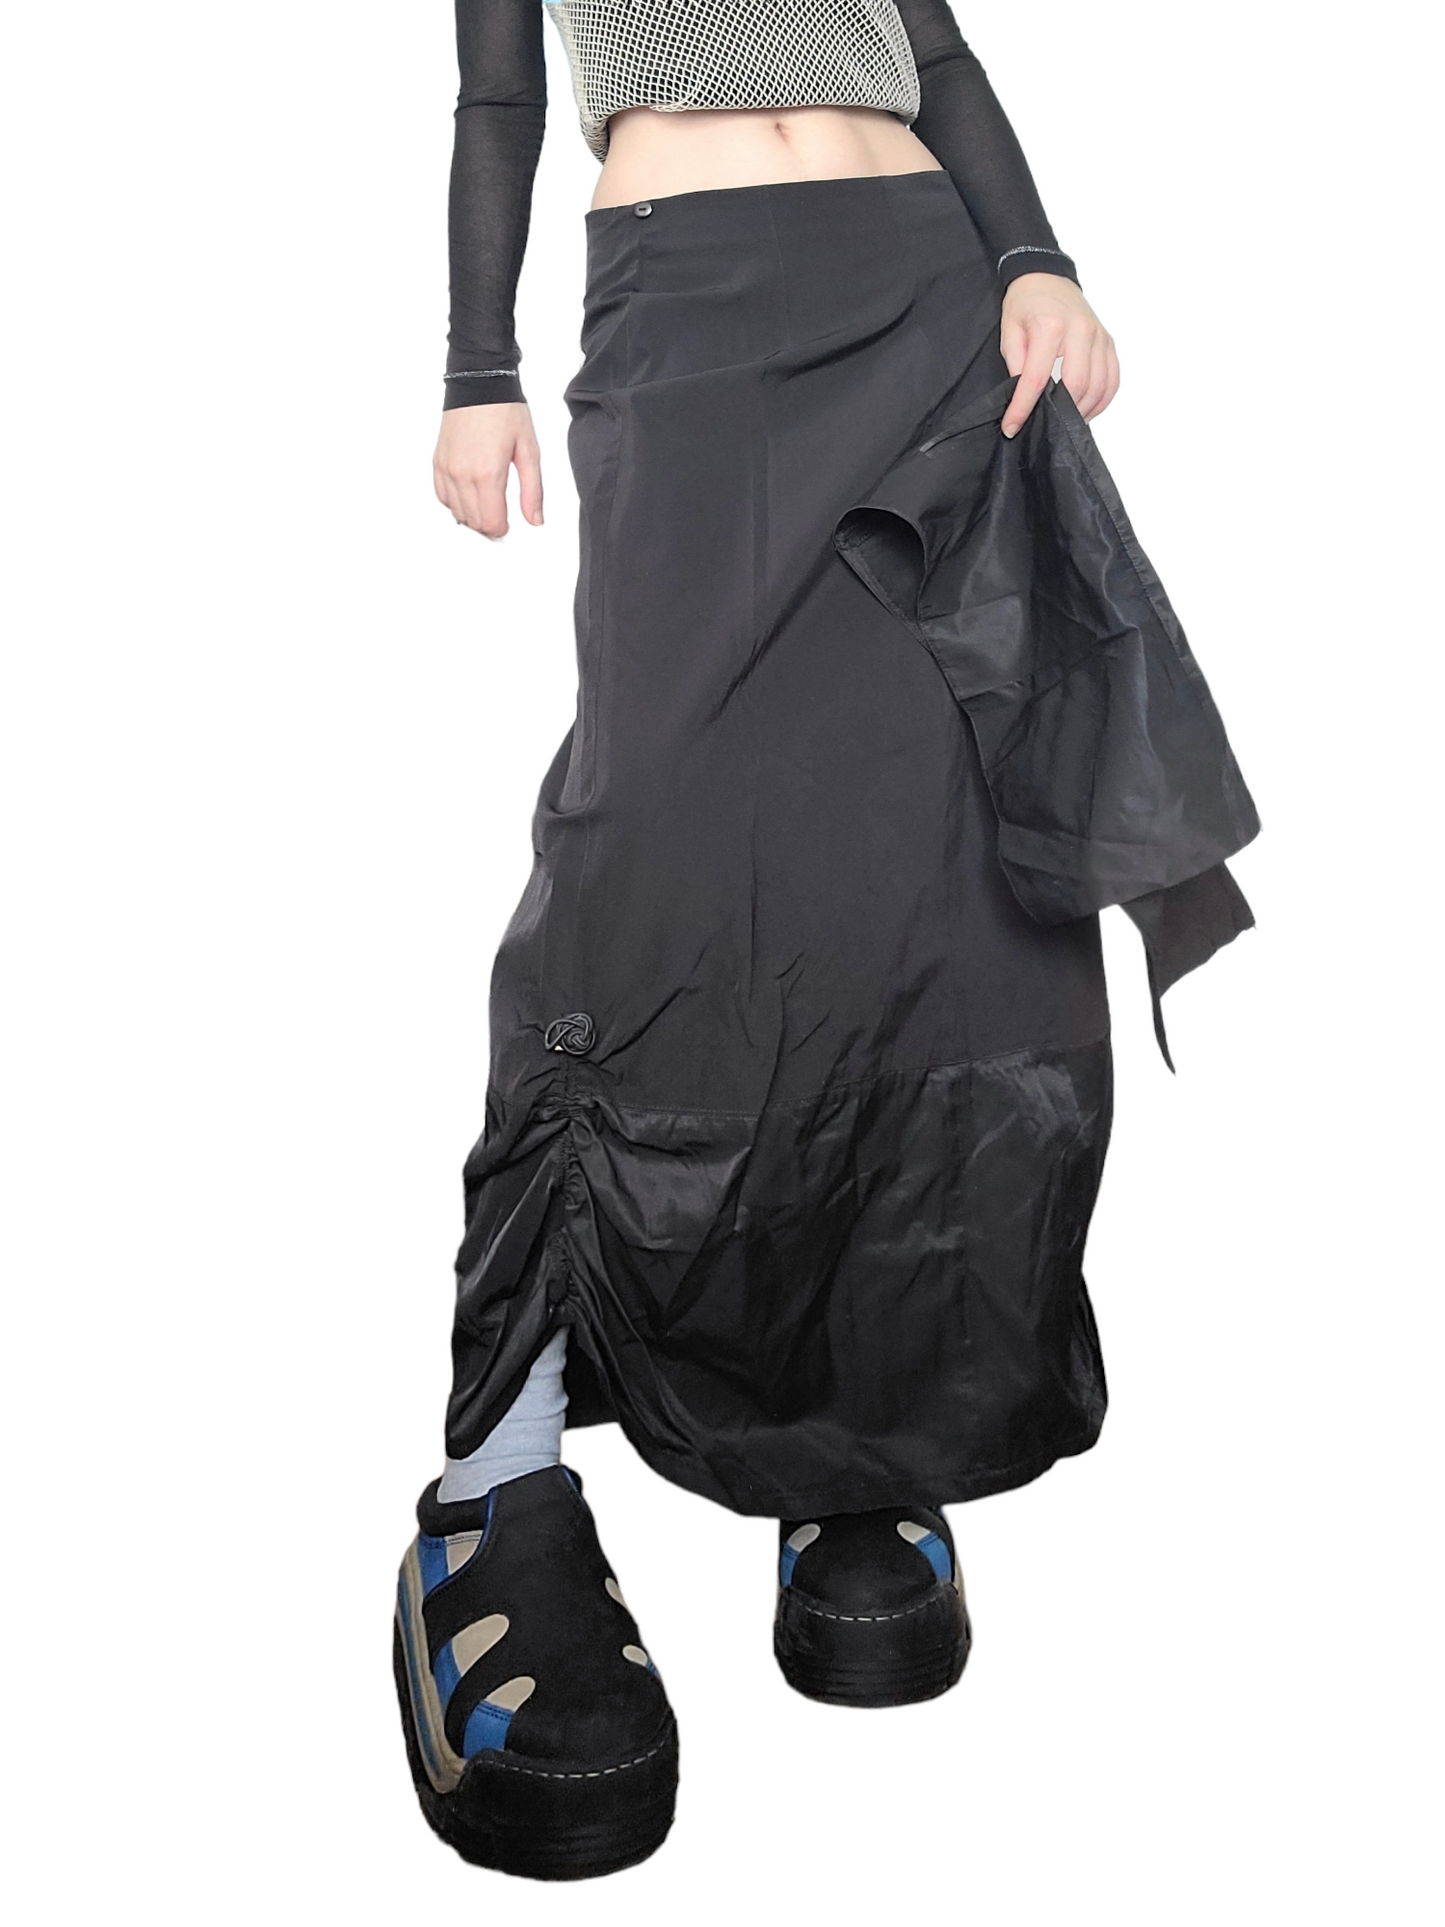 Maxi skirt parachute noire dystopian